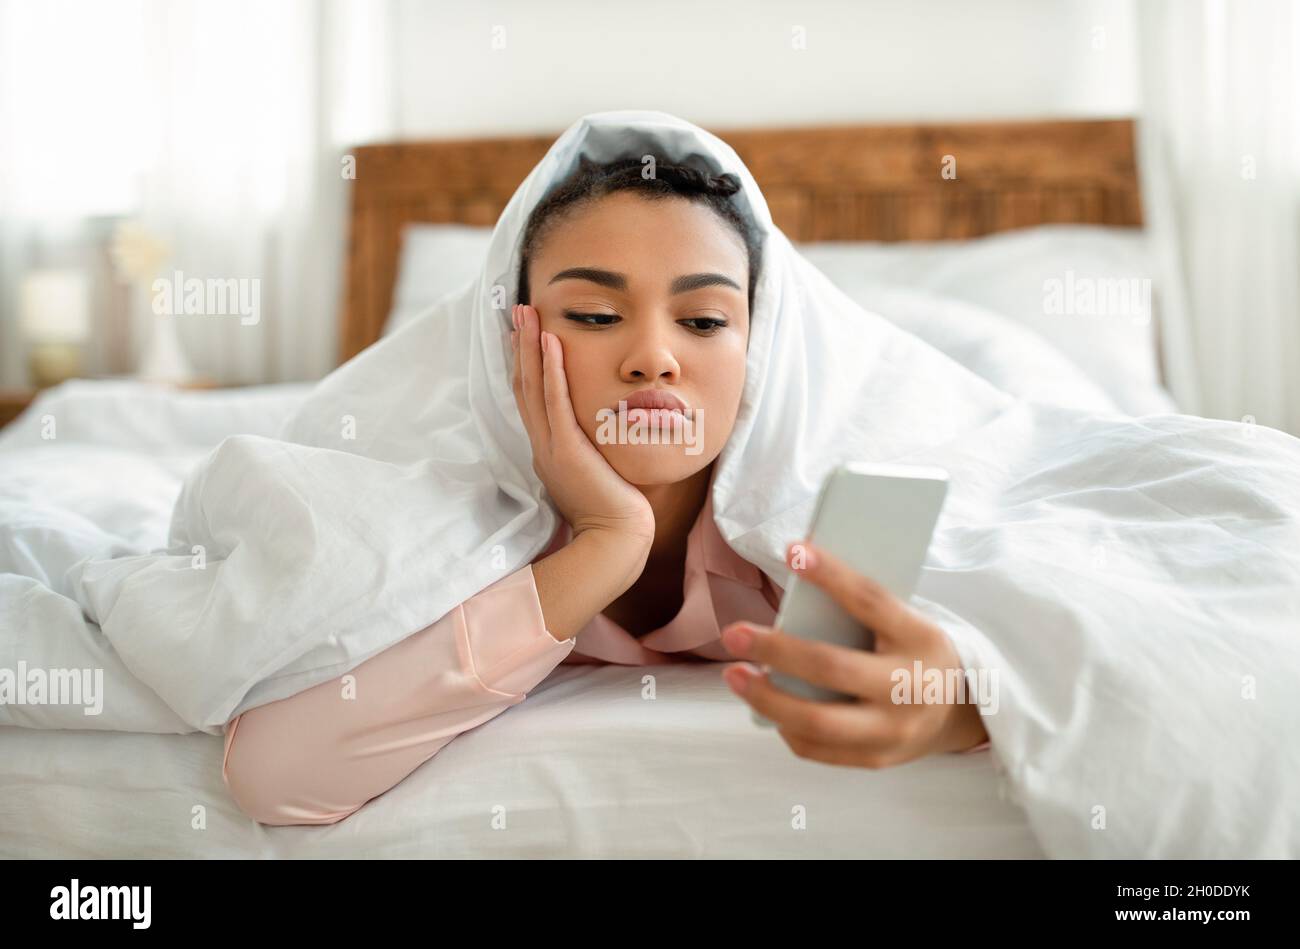 Verärgert junge schwarze Frau, die auf den Smartphone-Bildschirm schaut, während sie unter der Decke im Bett liegt und sich einsam oder deprimiert fühlt Stockfoto